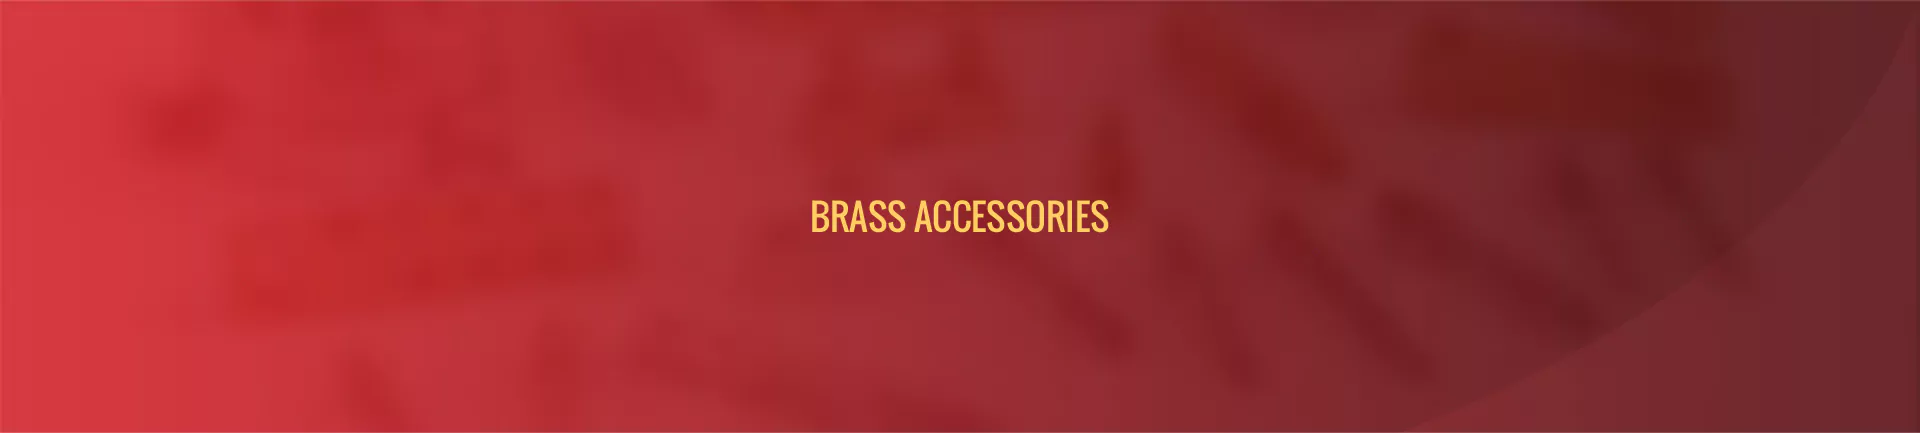 brass-accessories-banner